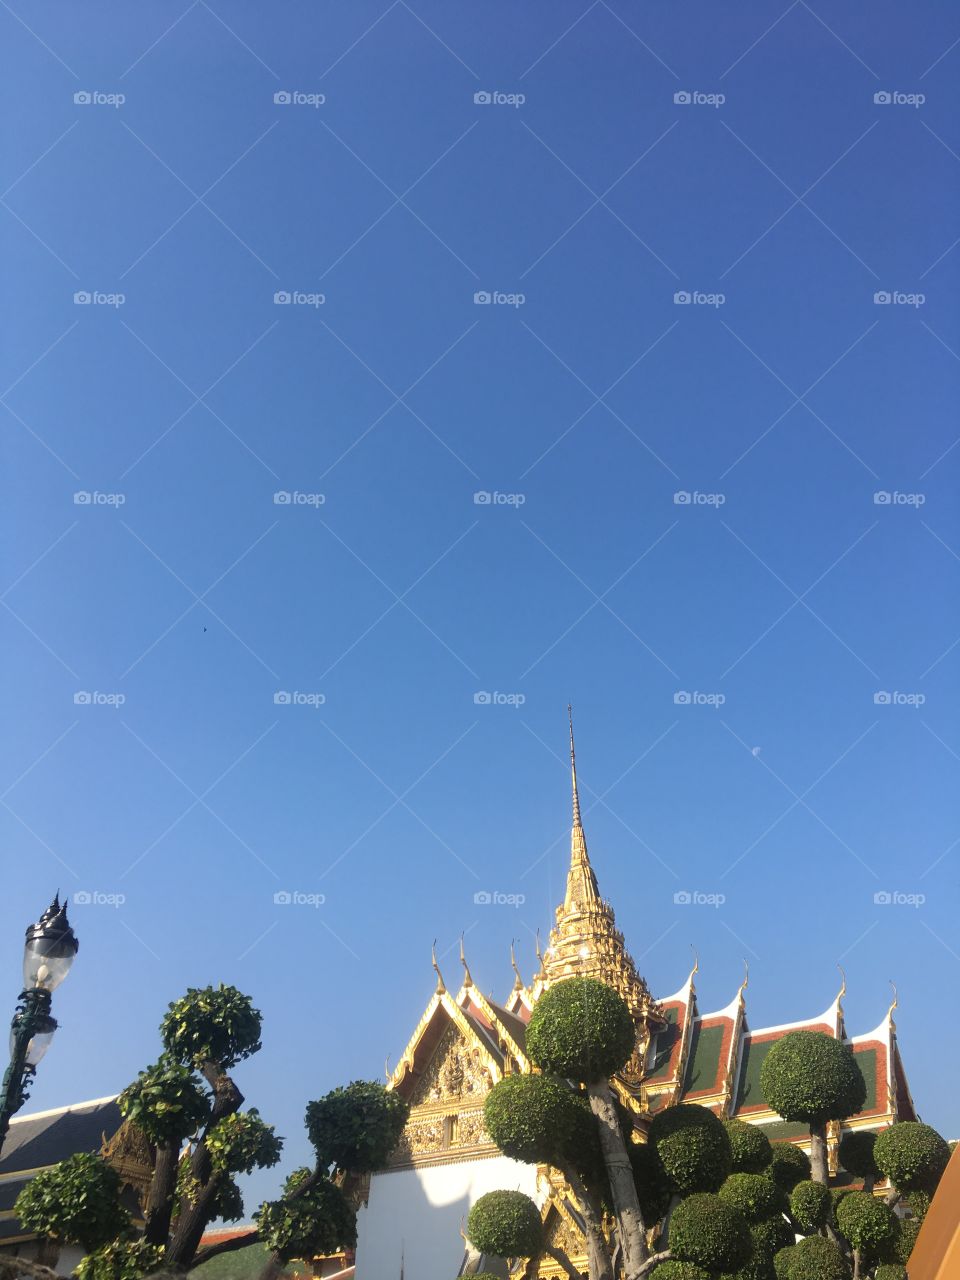 Thai Royal Palace, Thailand.